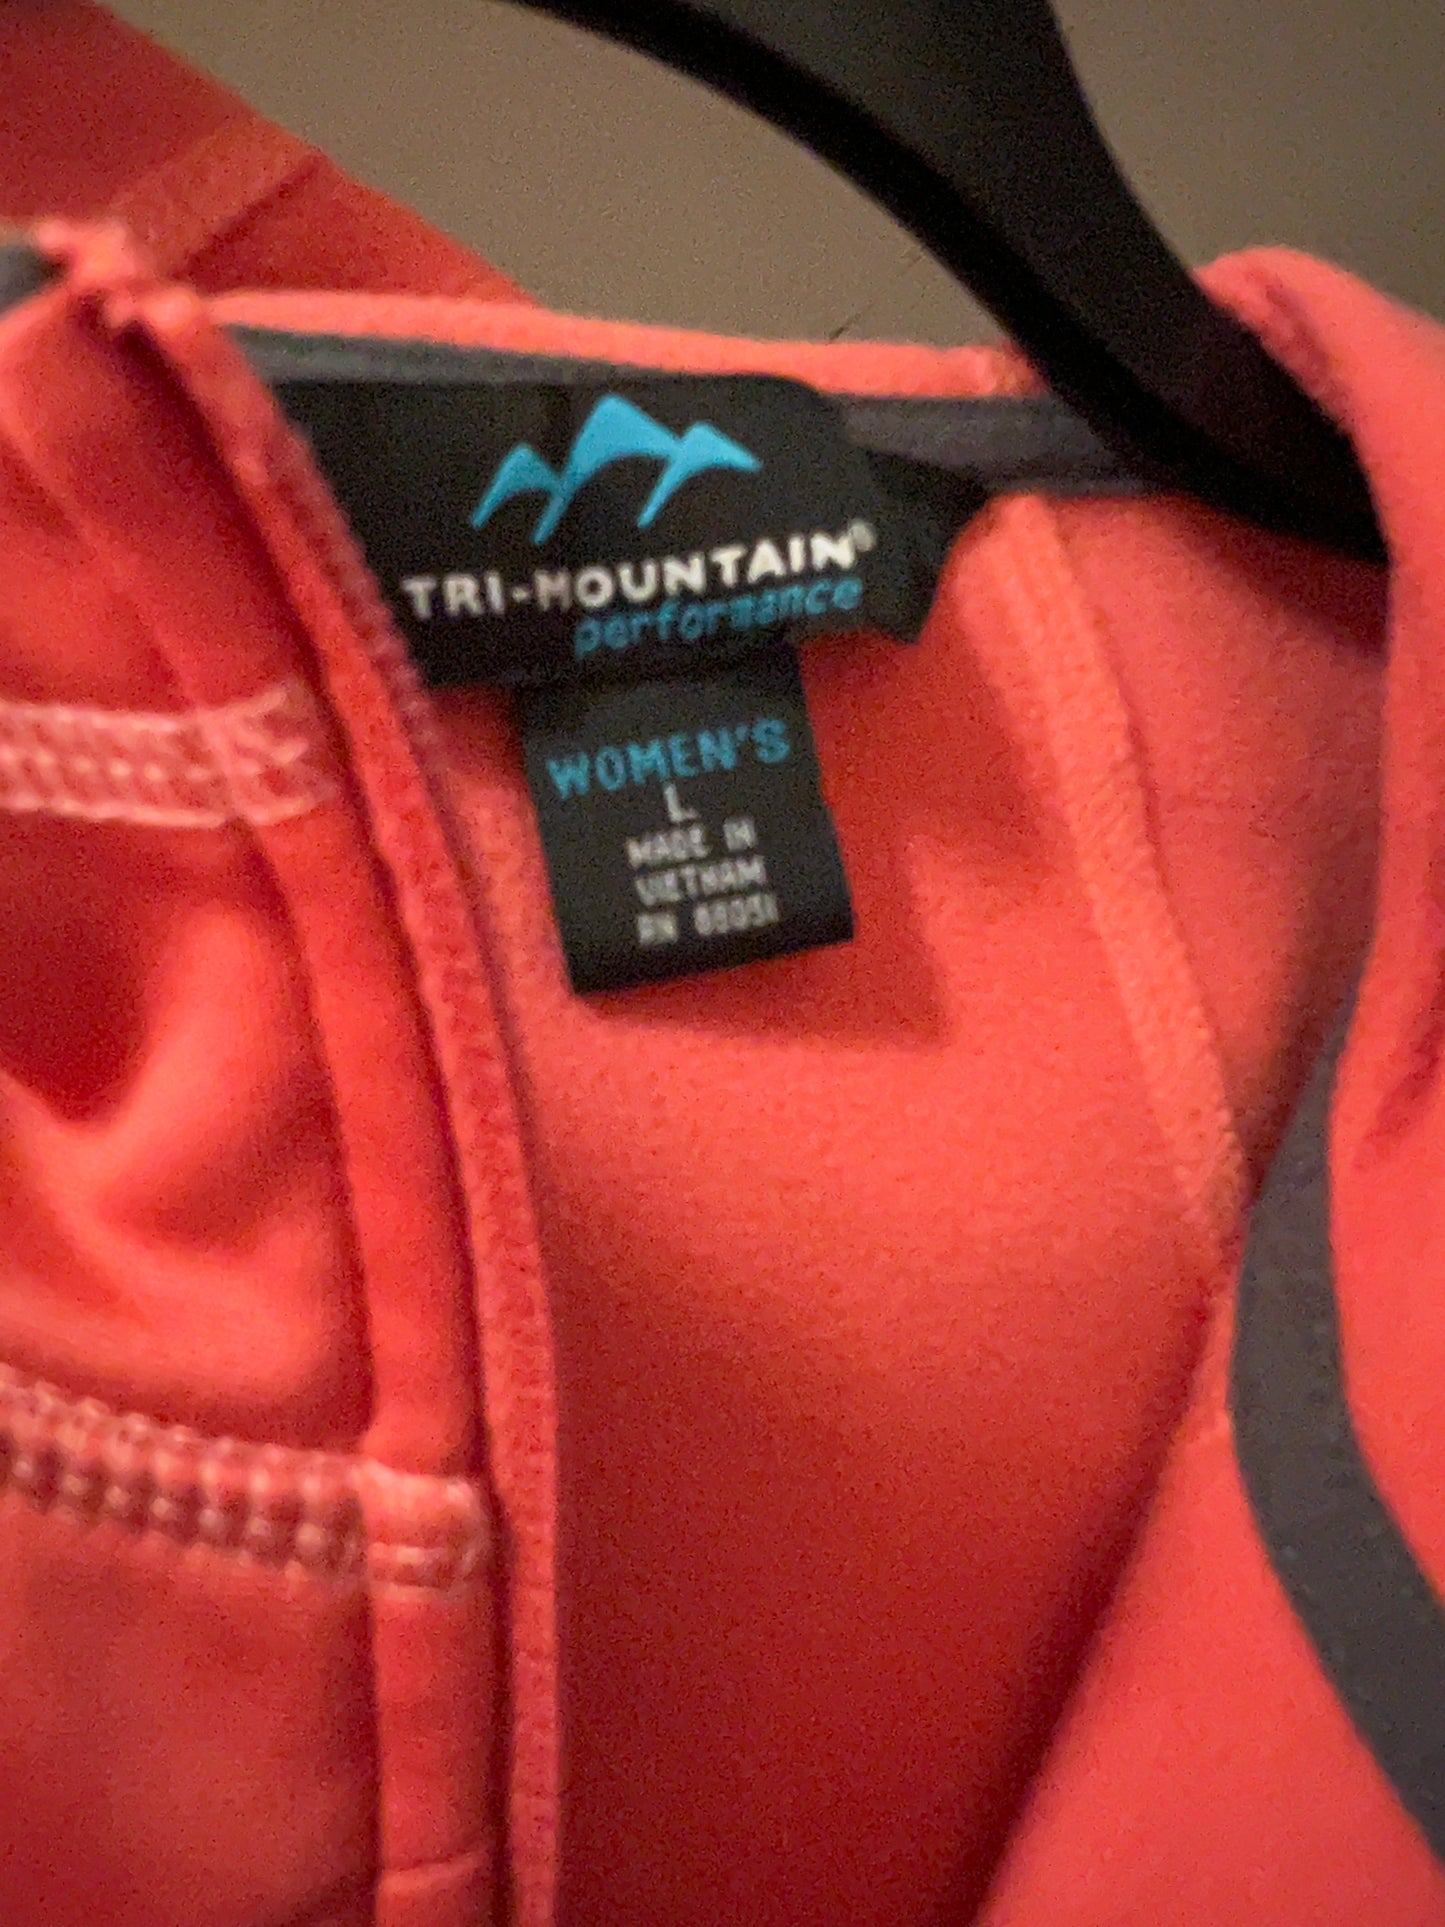 Tri mountain performance jacket